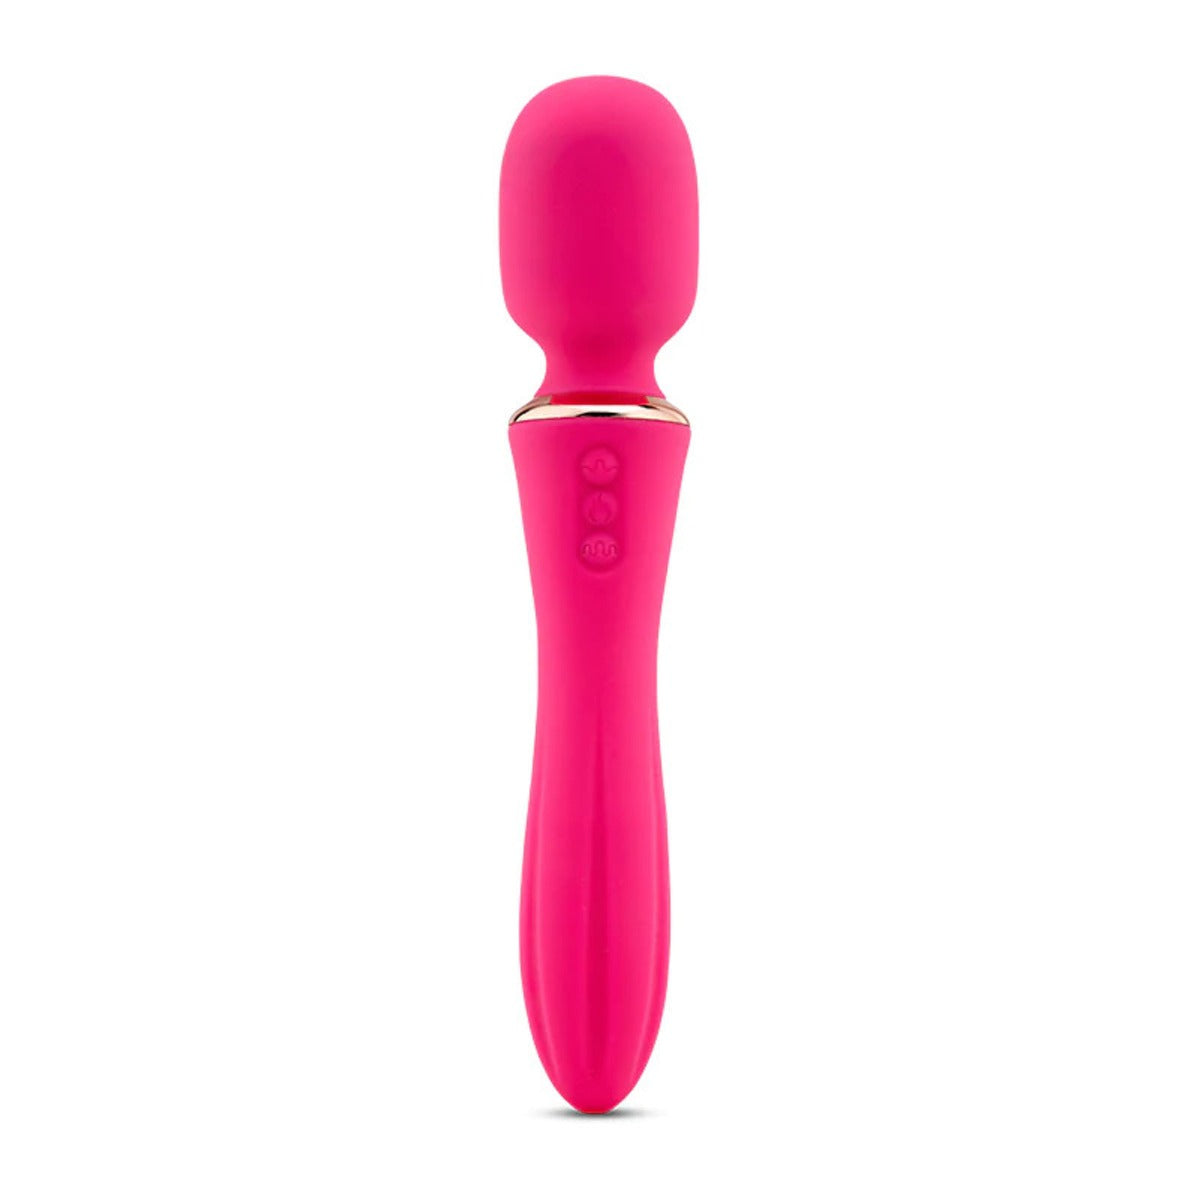 Nu Sensuelle Mika Nubii Mini Wand Massager Vibrator | Pink